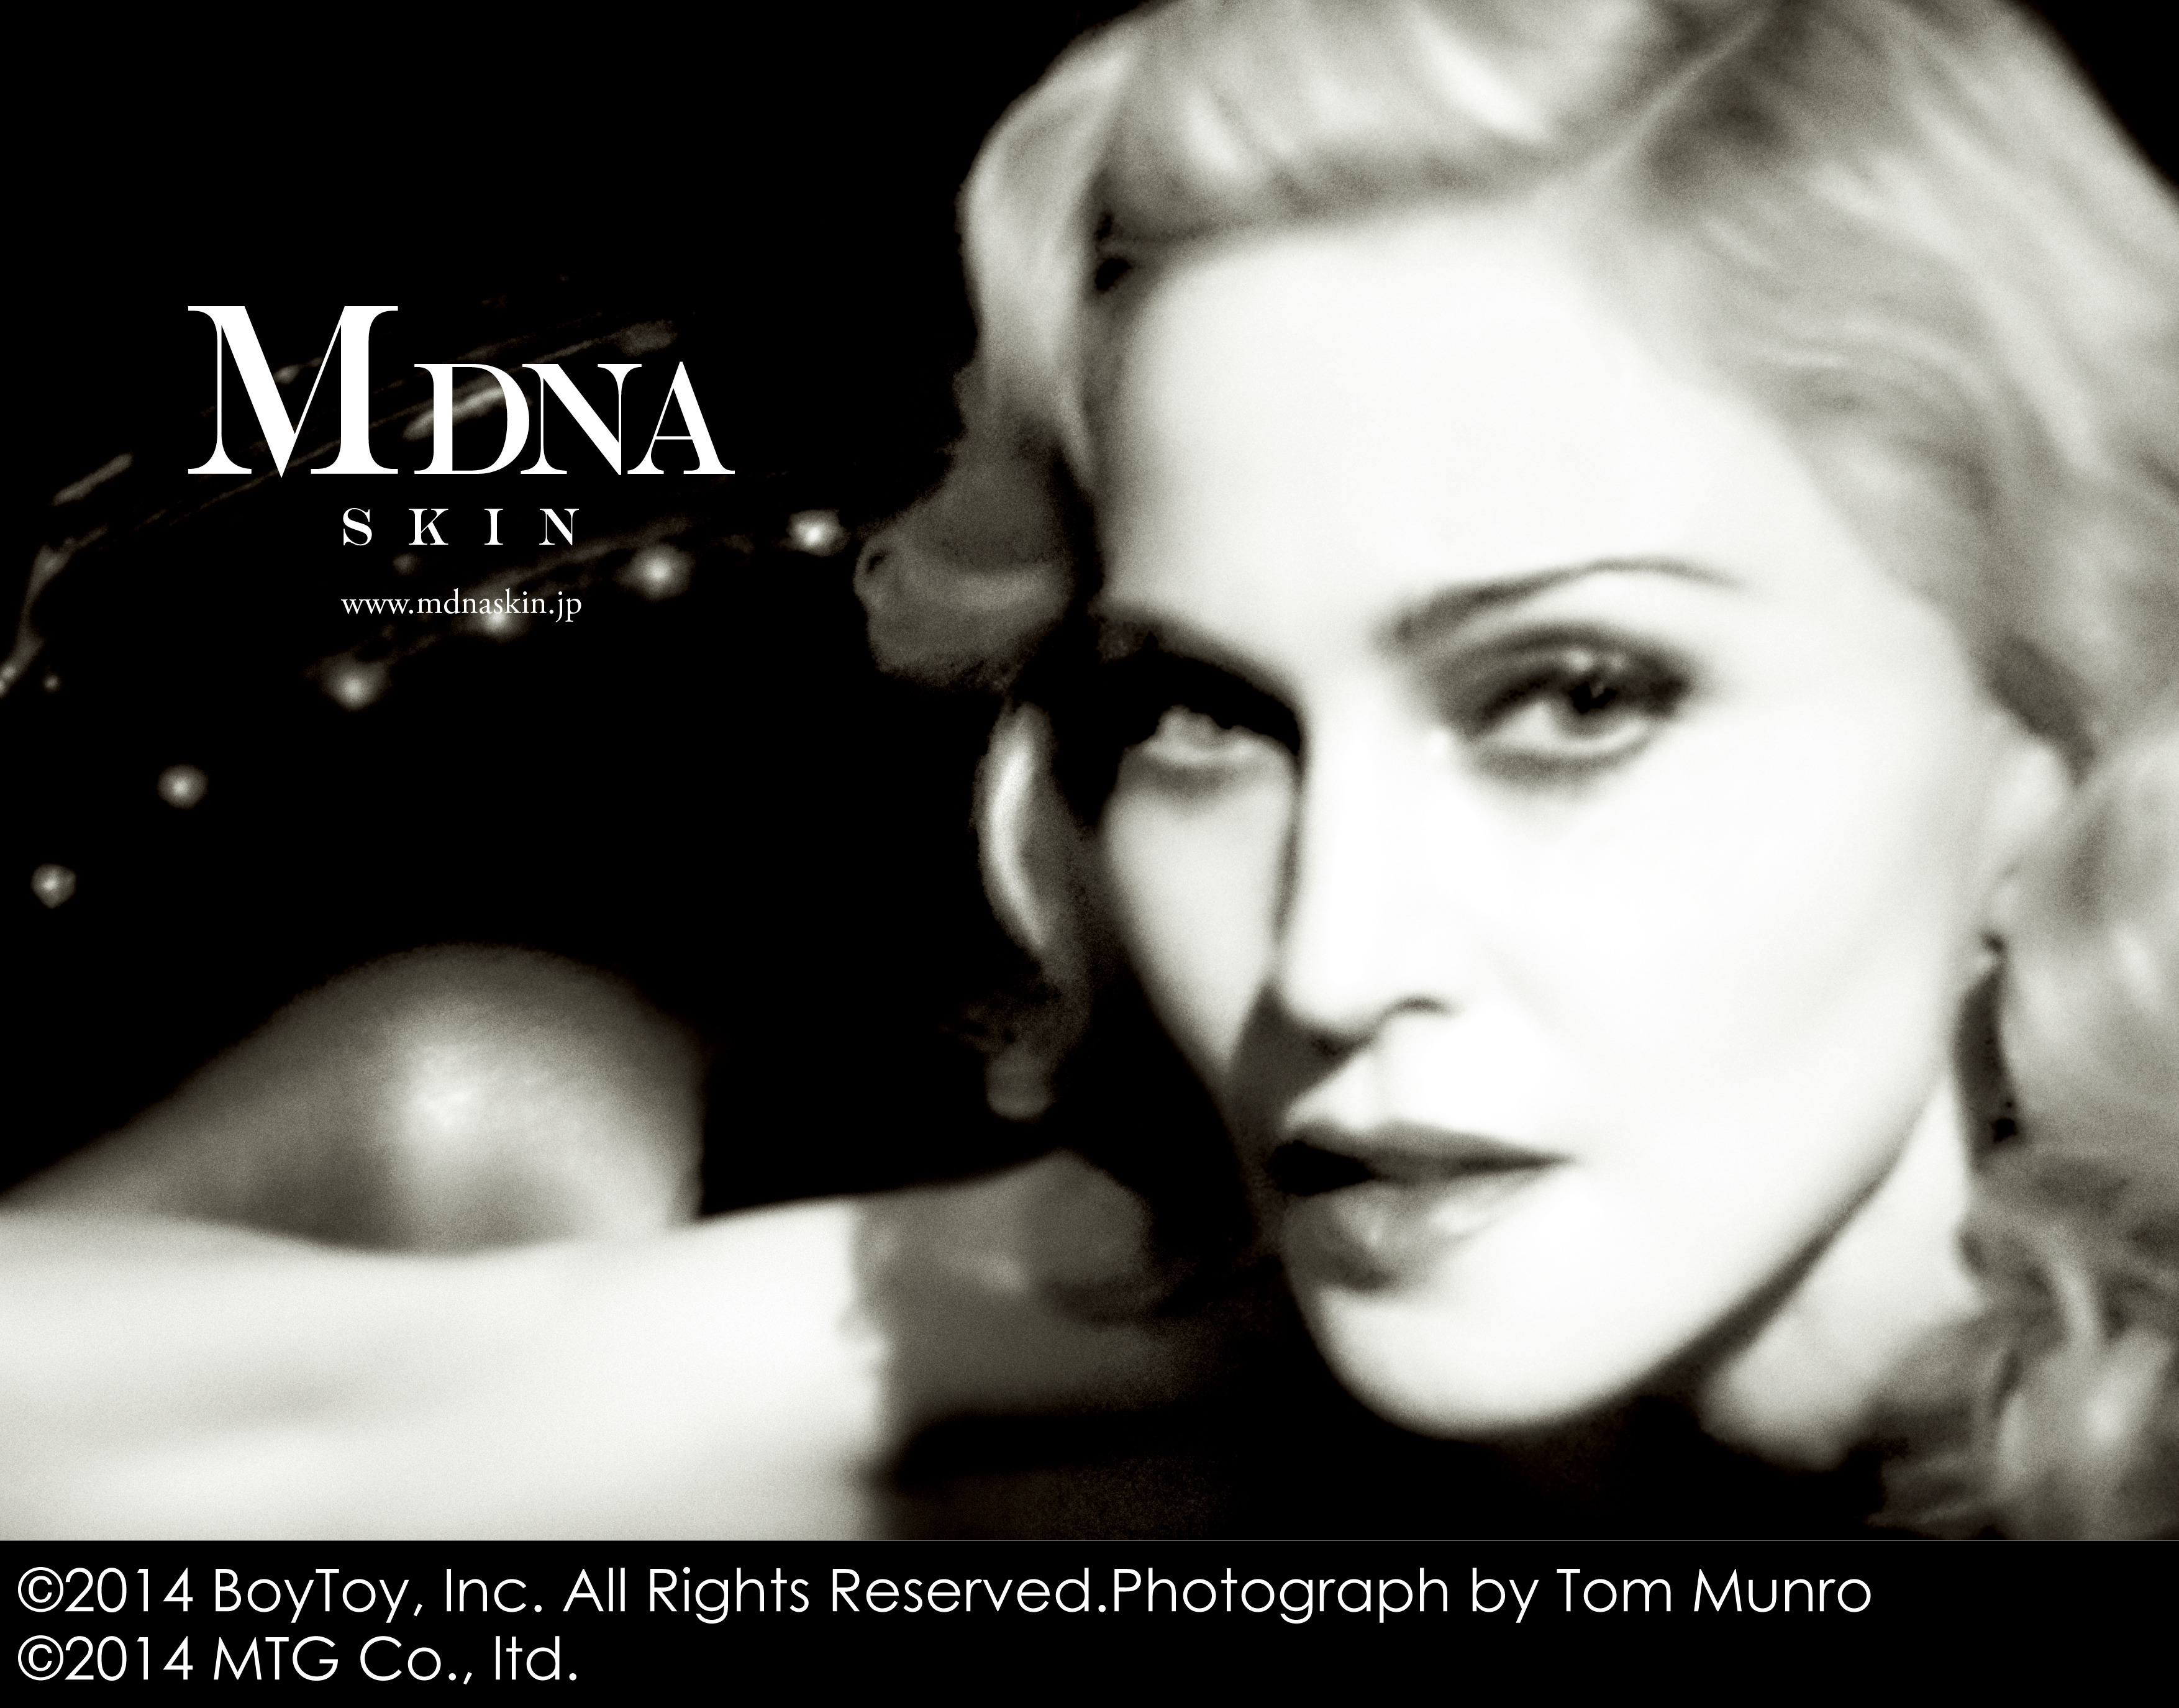 マドンナが美への“解放”掲げる…スキンケアブランド「MDNA SKIN」が原宿でローンチ